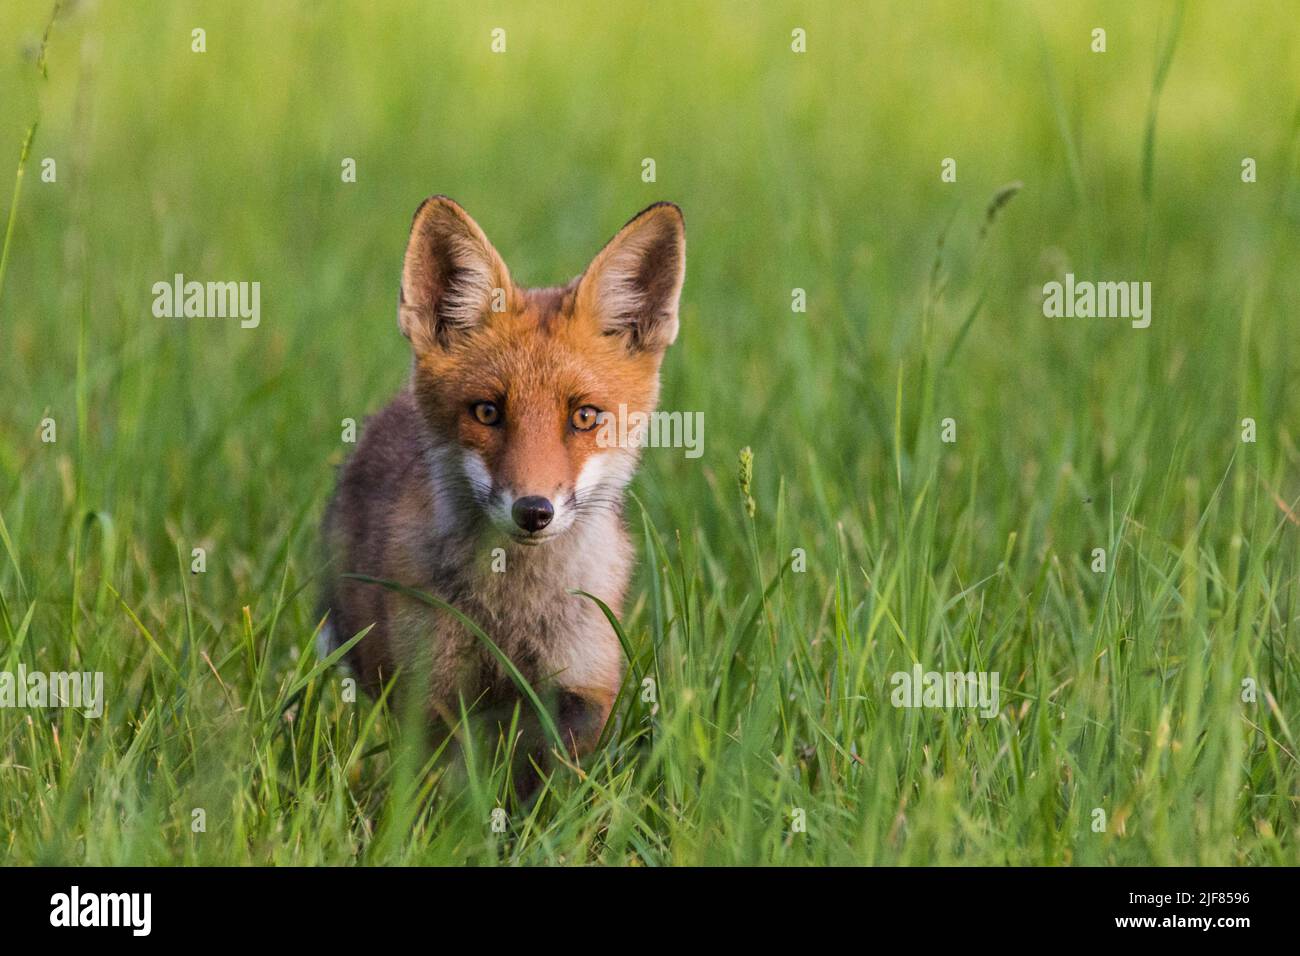 Junger Rotfuchs, neugierig in die Kamera schauend, giovane volpe rossa curiosamente guardando la macchina fotografica Foto Stock